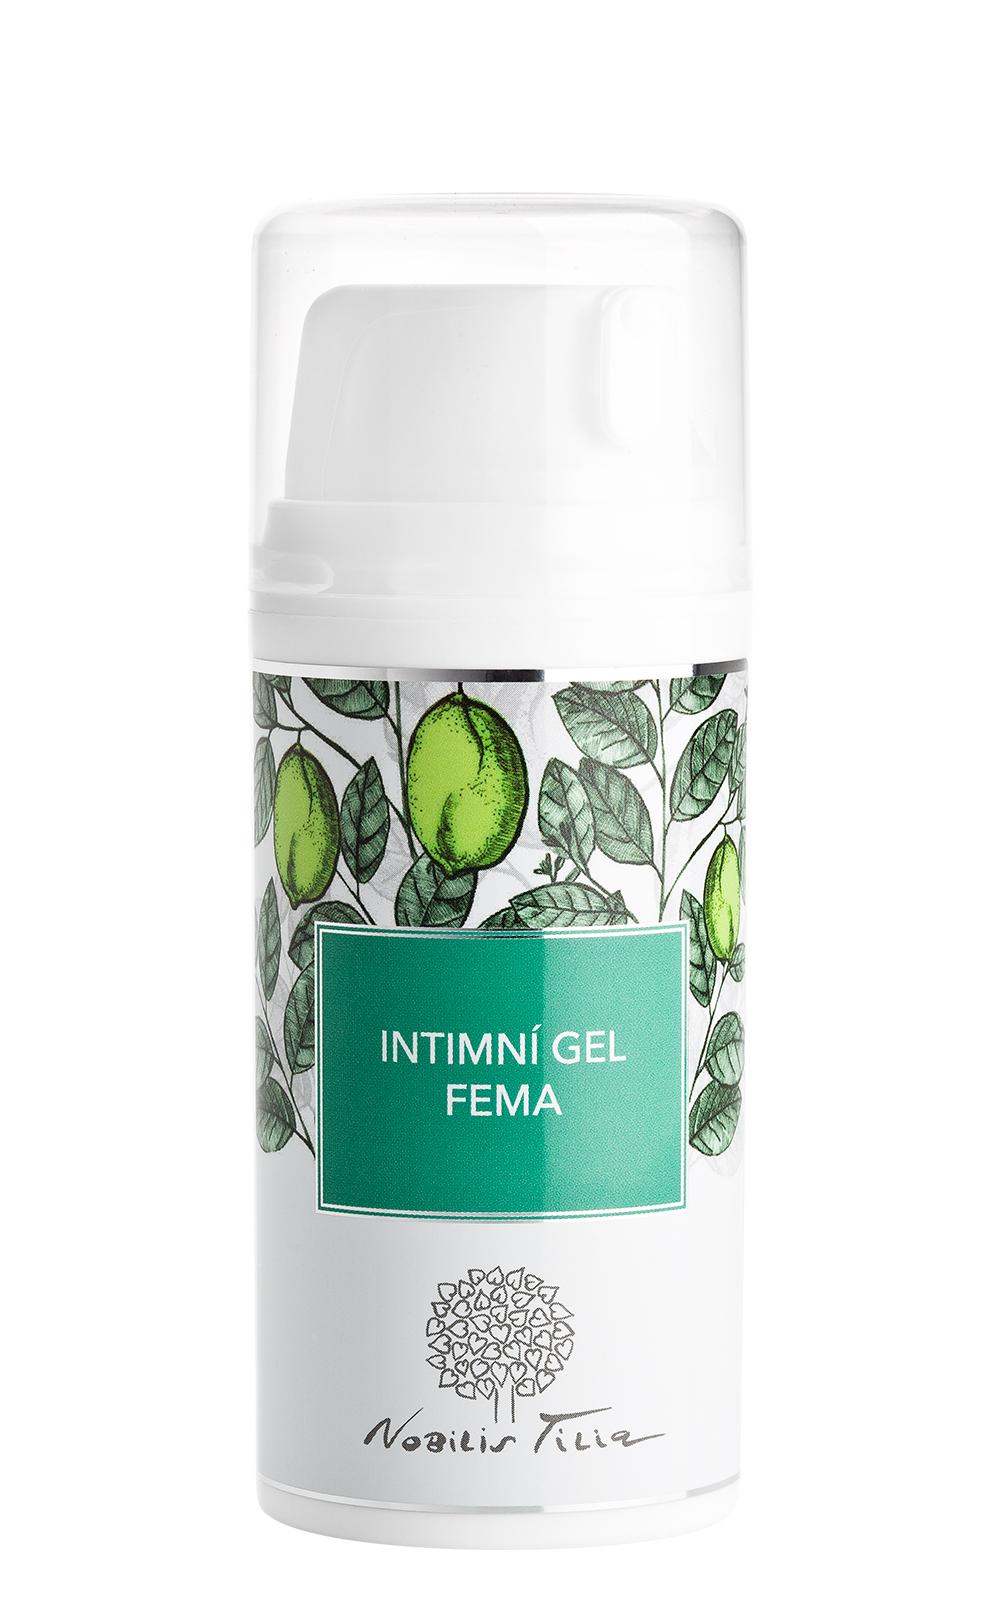 Gel pro intimní hygienu Nobilis Tilia Fema 100 ml (N0210M)